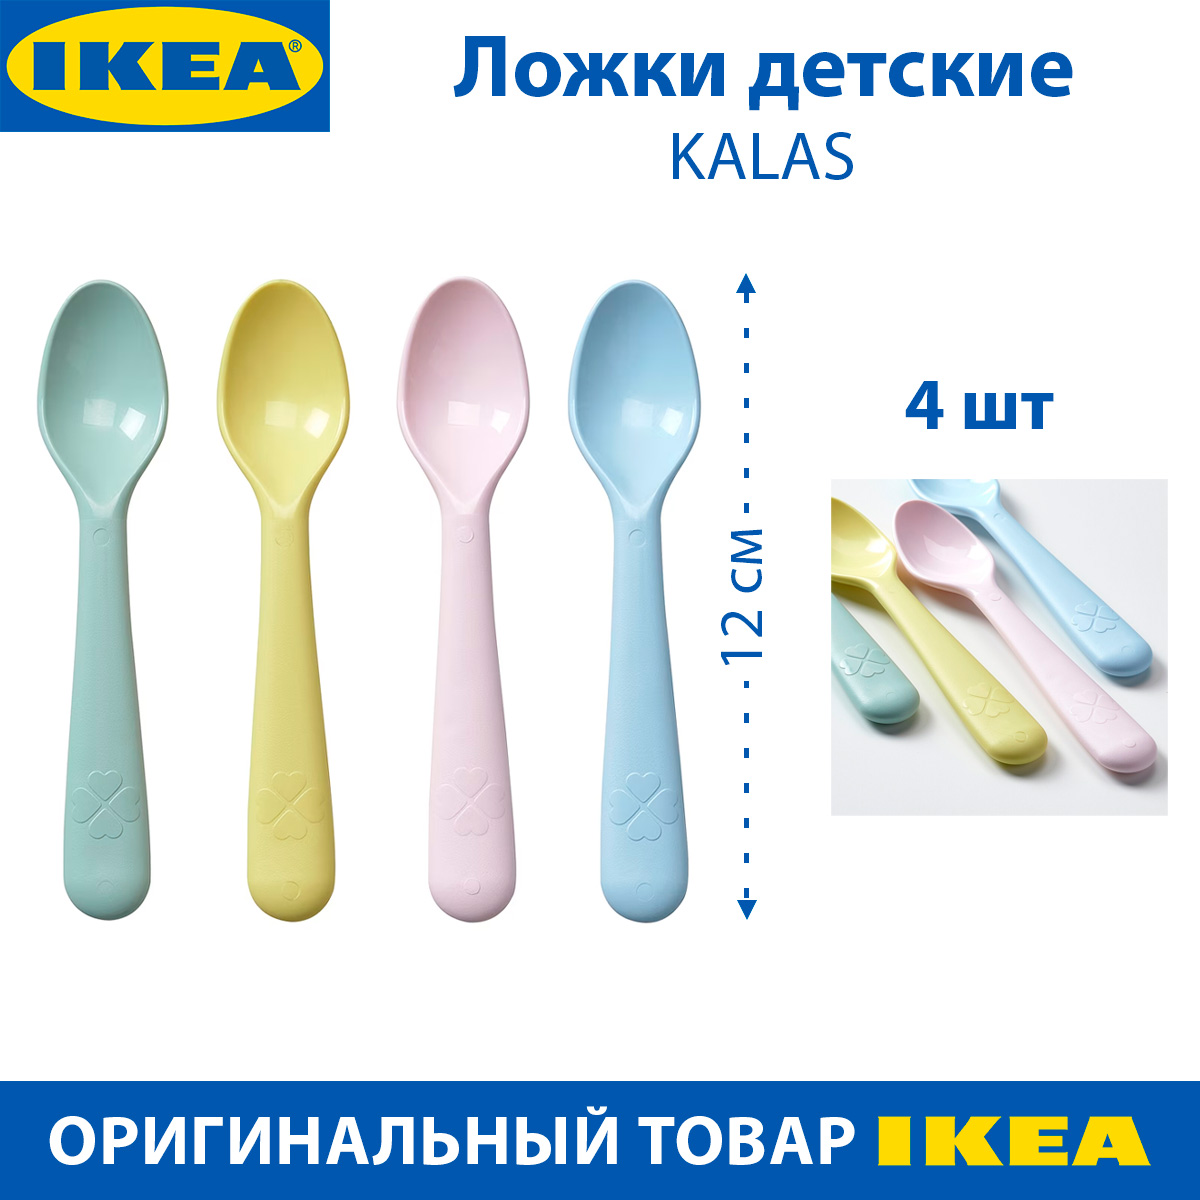 Ложки детские IKEA KALAS КАЛАС, разноцветные, пластиковые, 4 шт в наборе